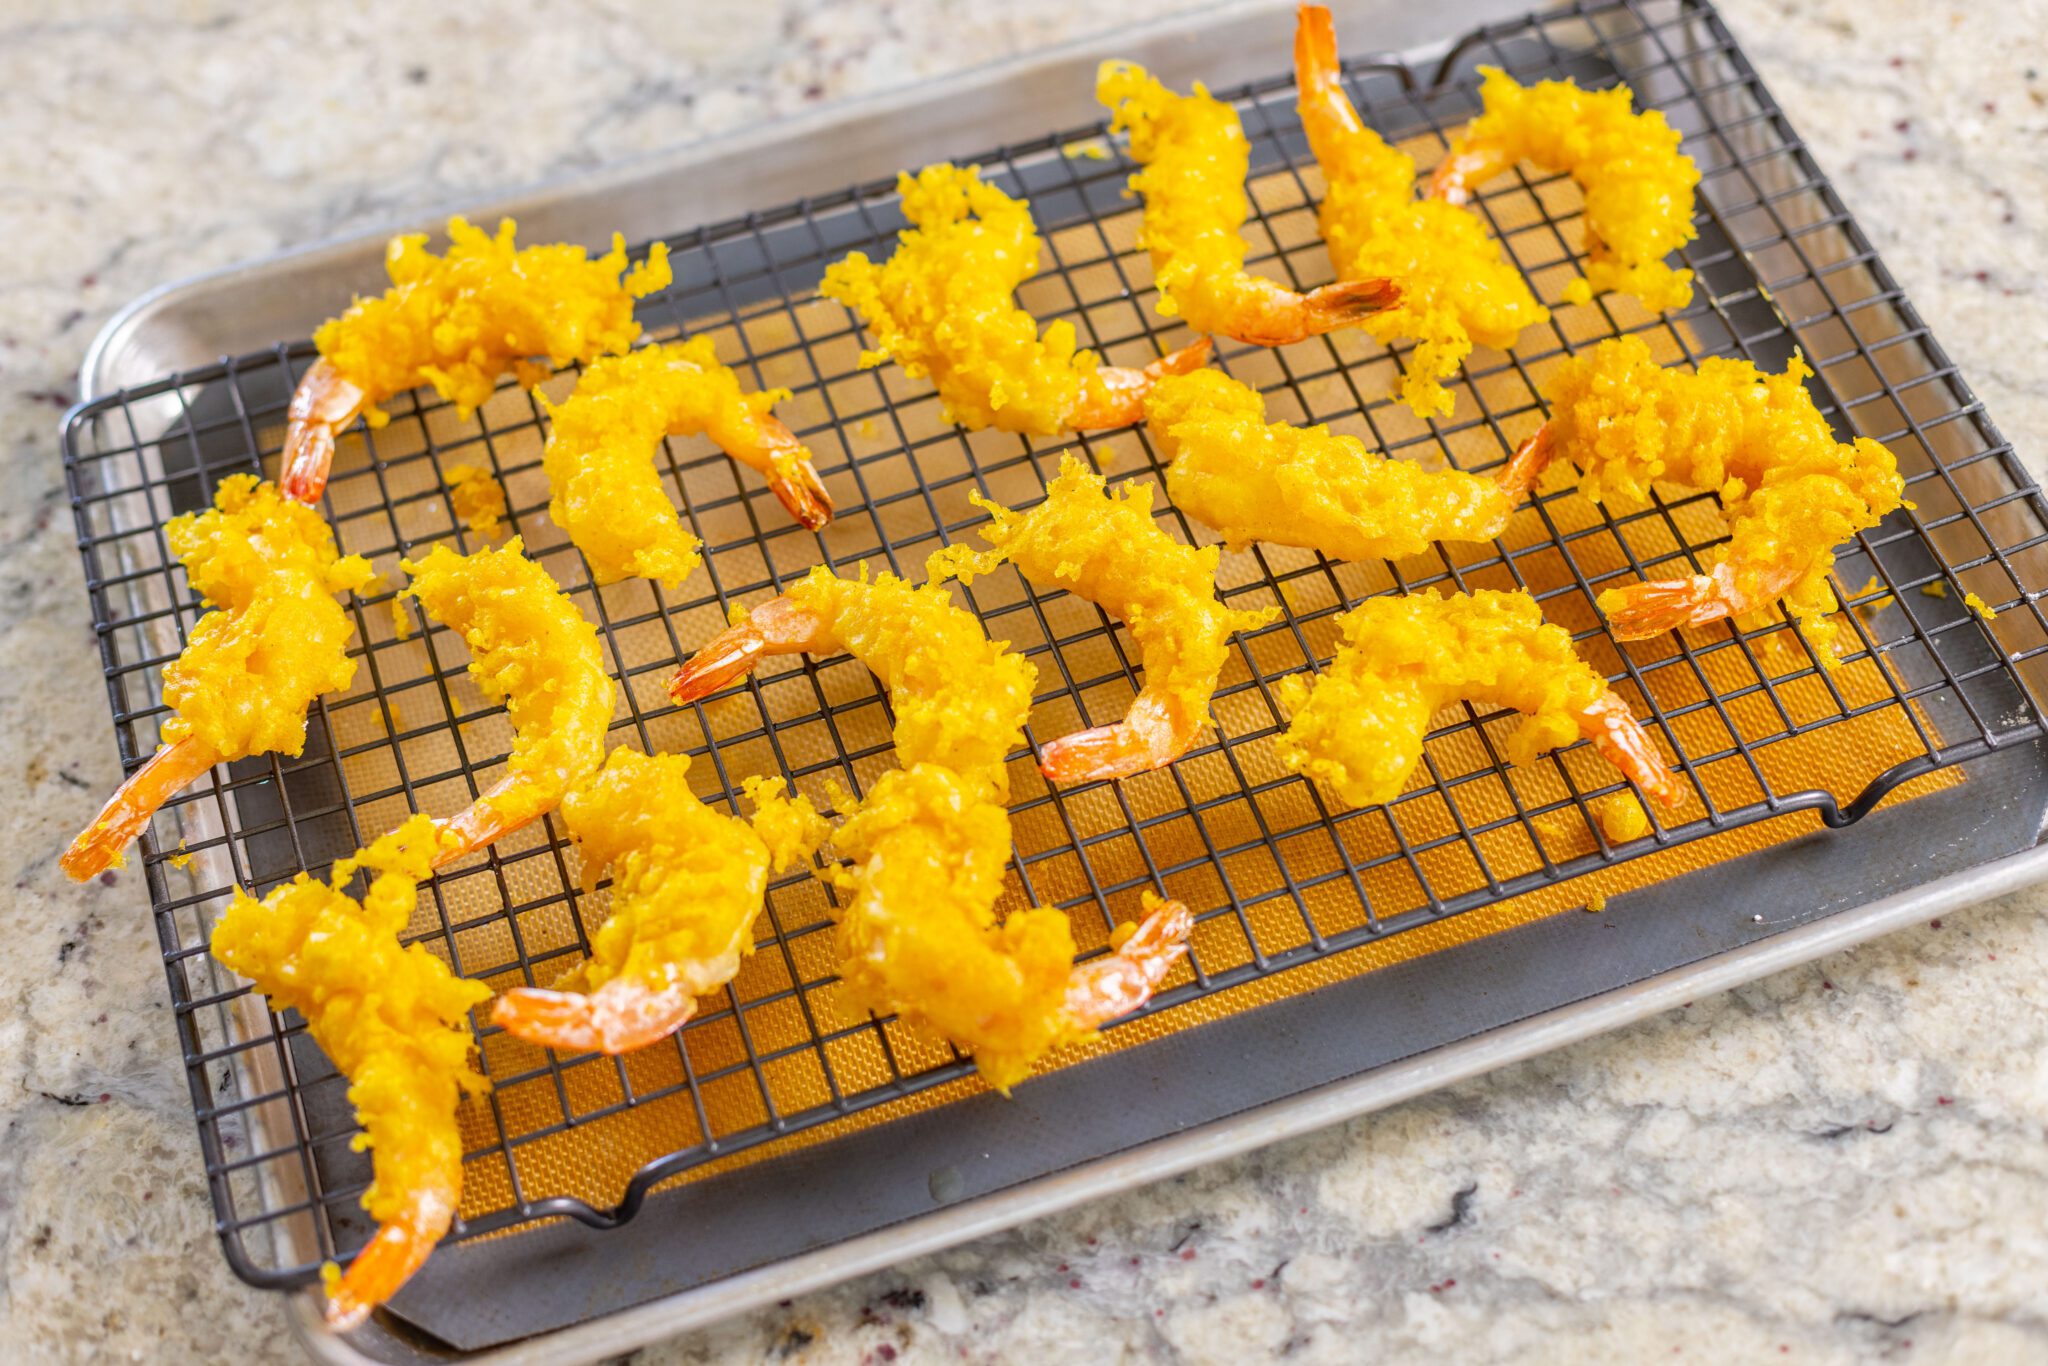 How To Make Shrimp Tempura Quickly And Easily